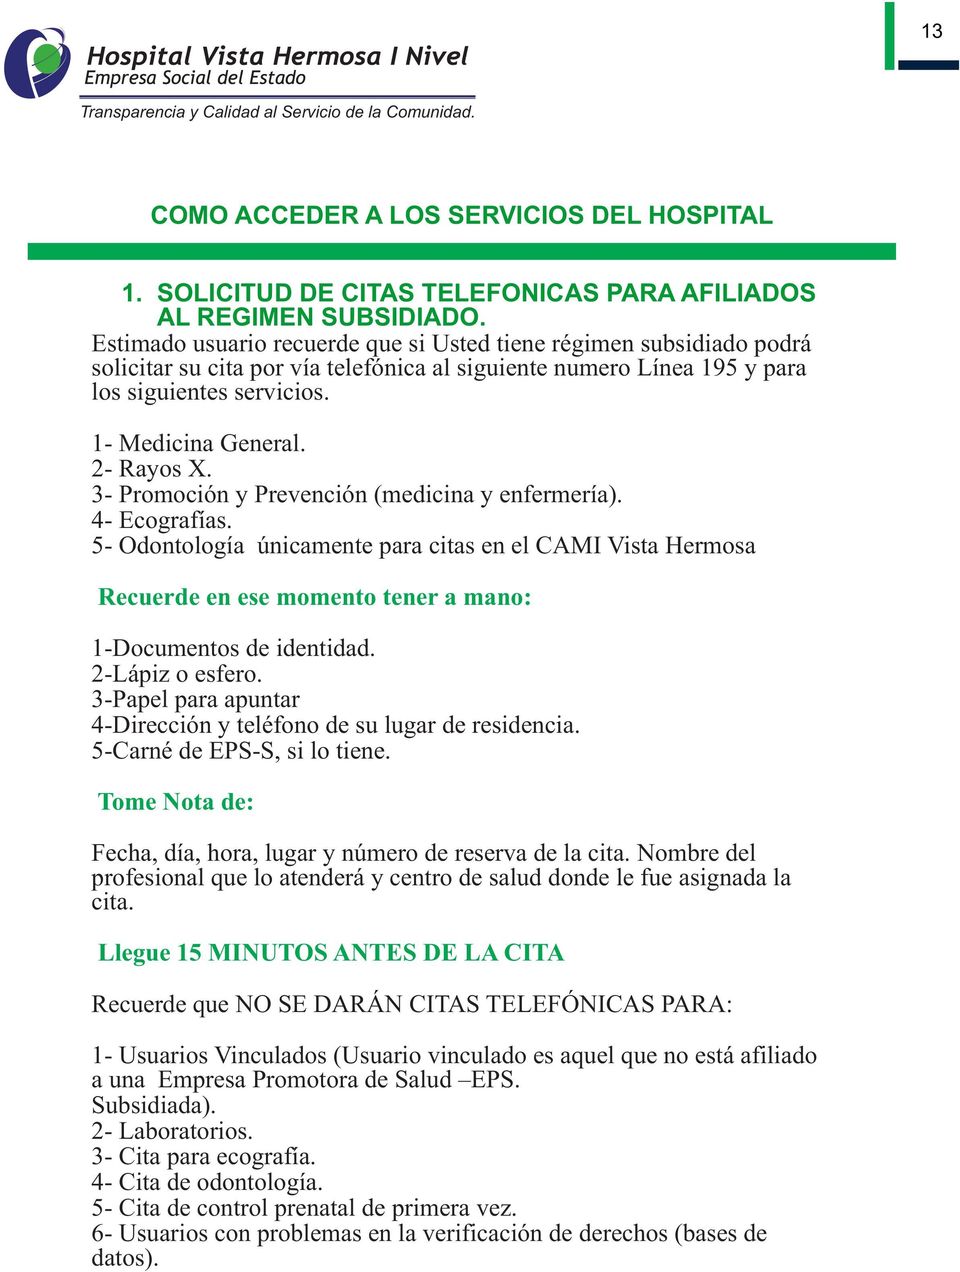 2- Rayos X. 3- Promoción y Prevención (medicina y enfermería). 4- Ecografías.